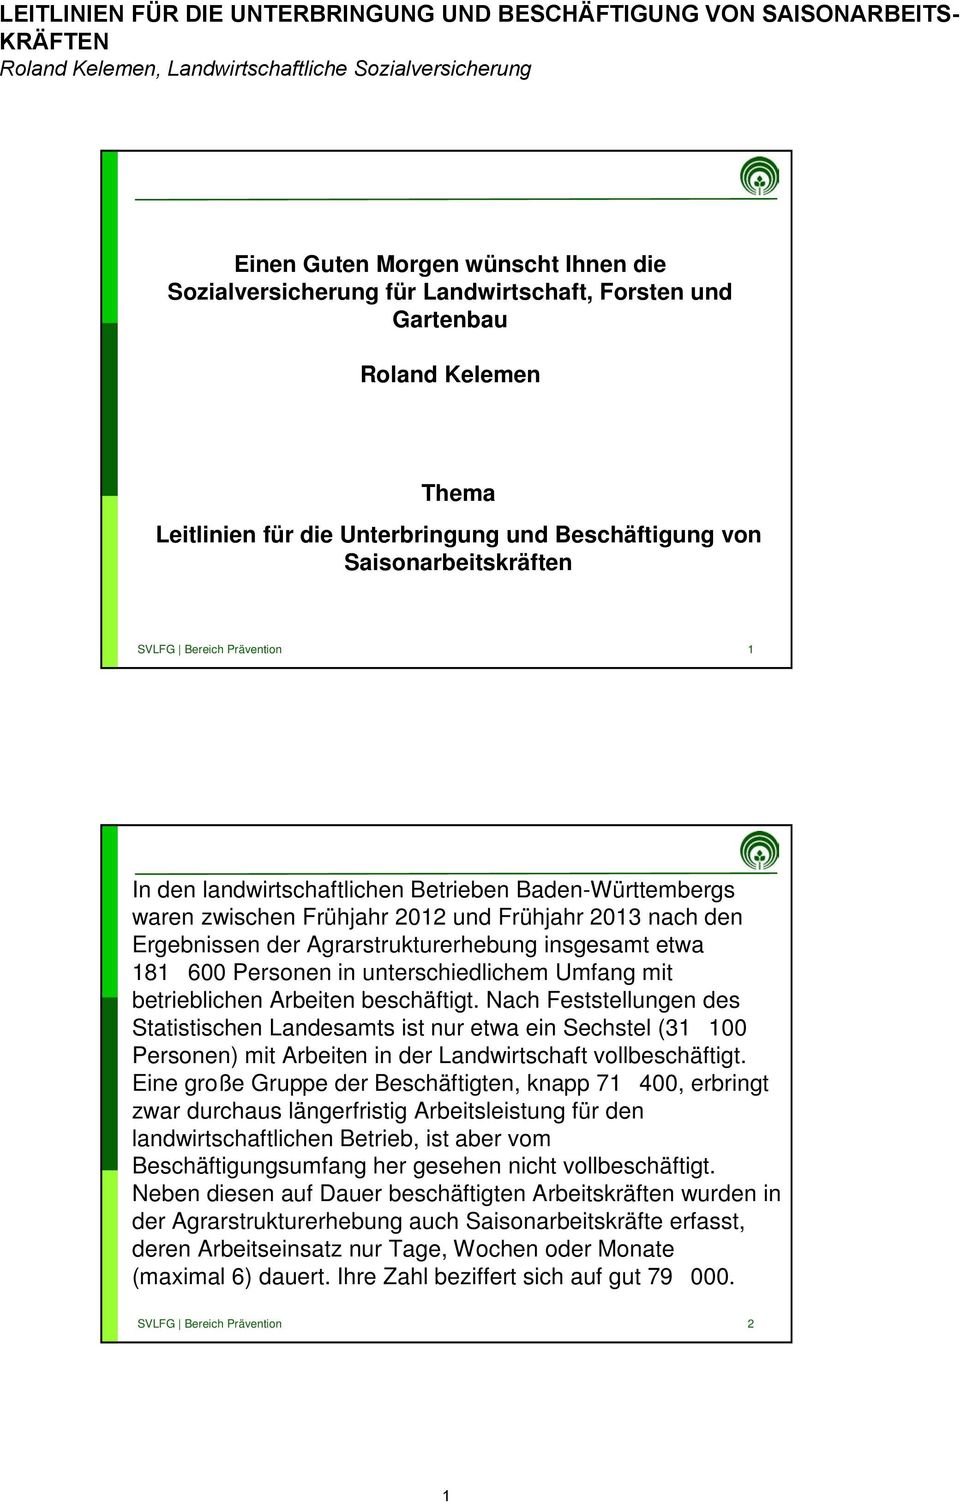 Baden-Württembergs waren zwischen Frühjahr 2012 und Frühjahr 2013 nach den Ergebnissen der Agrarstrukturerhebung insgesamt etwa 181600 Personen in unterschiedlichem Umfang mit betrieblichen Arbeiten